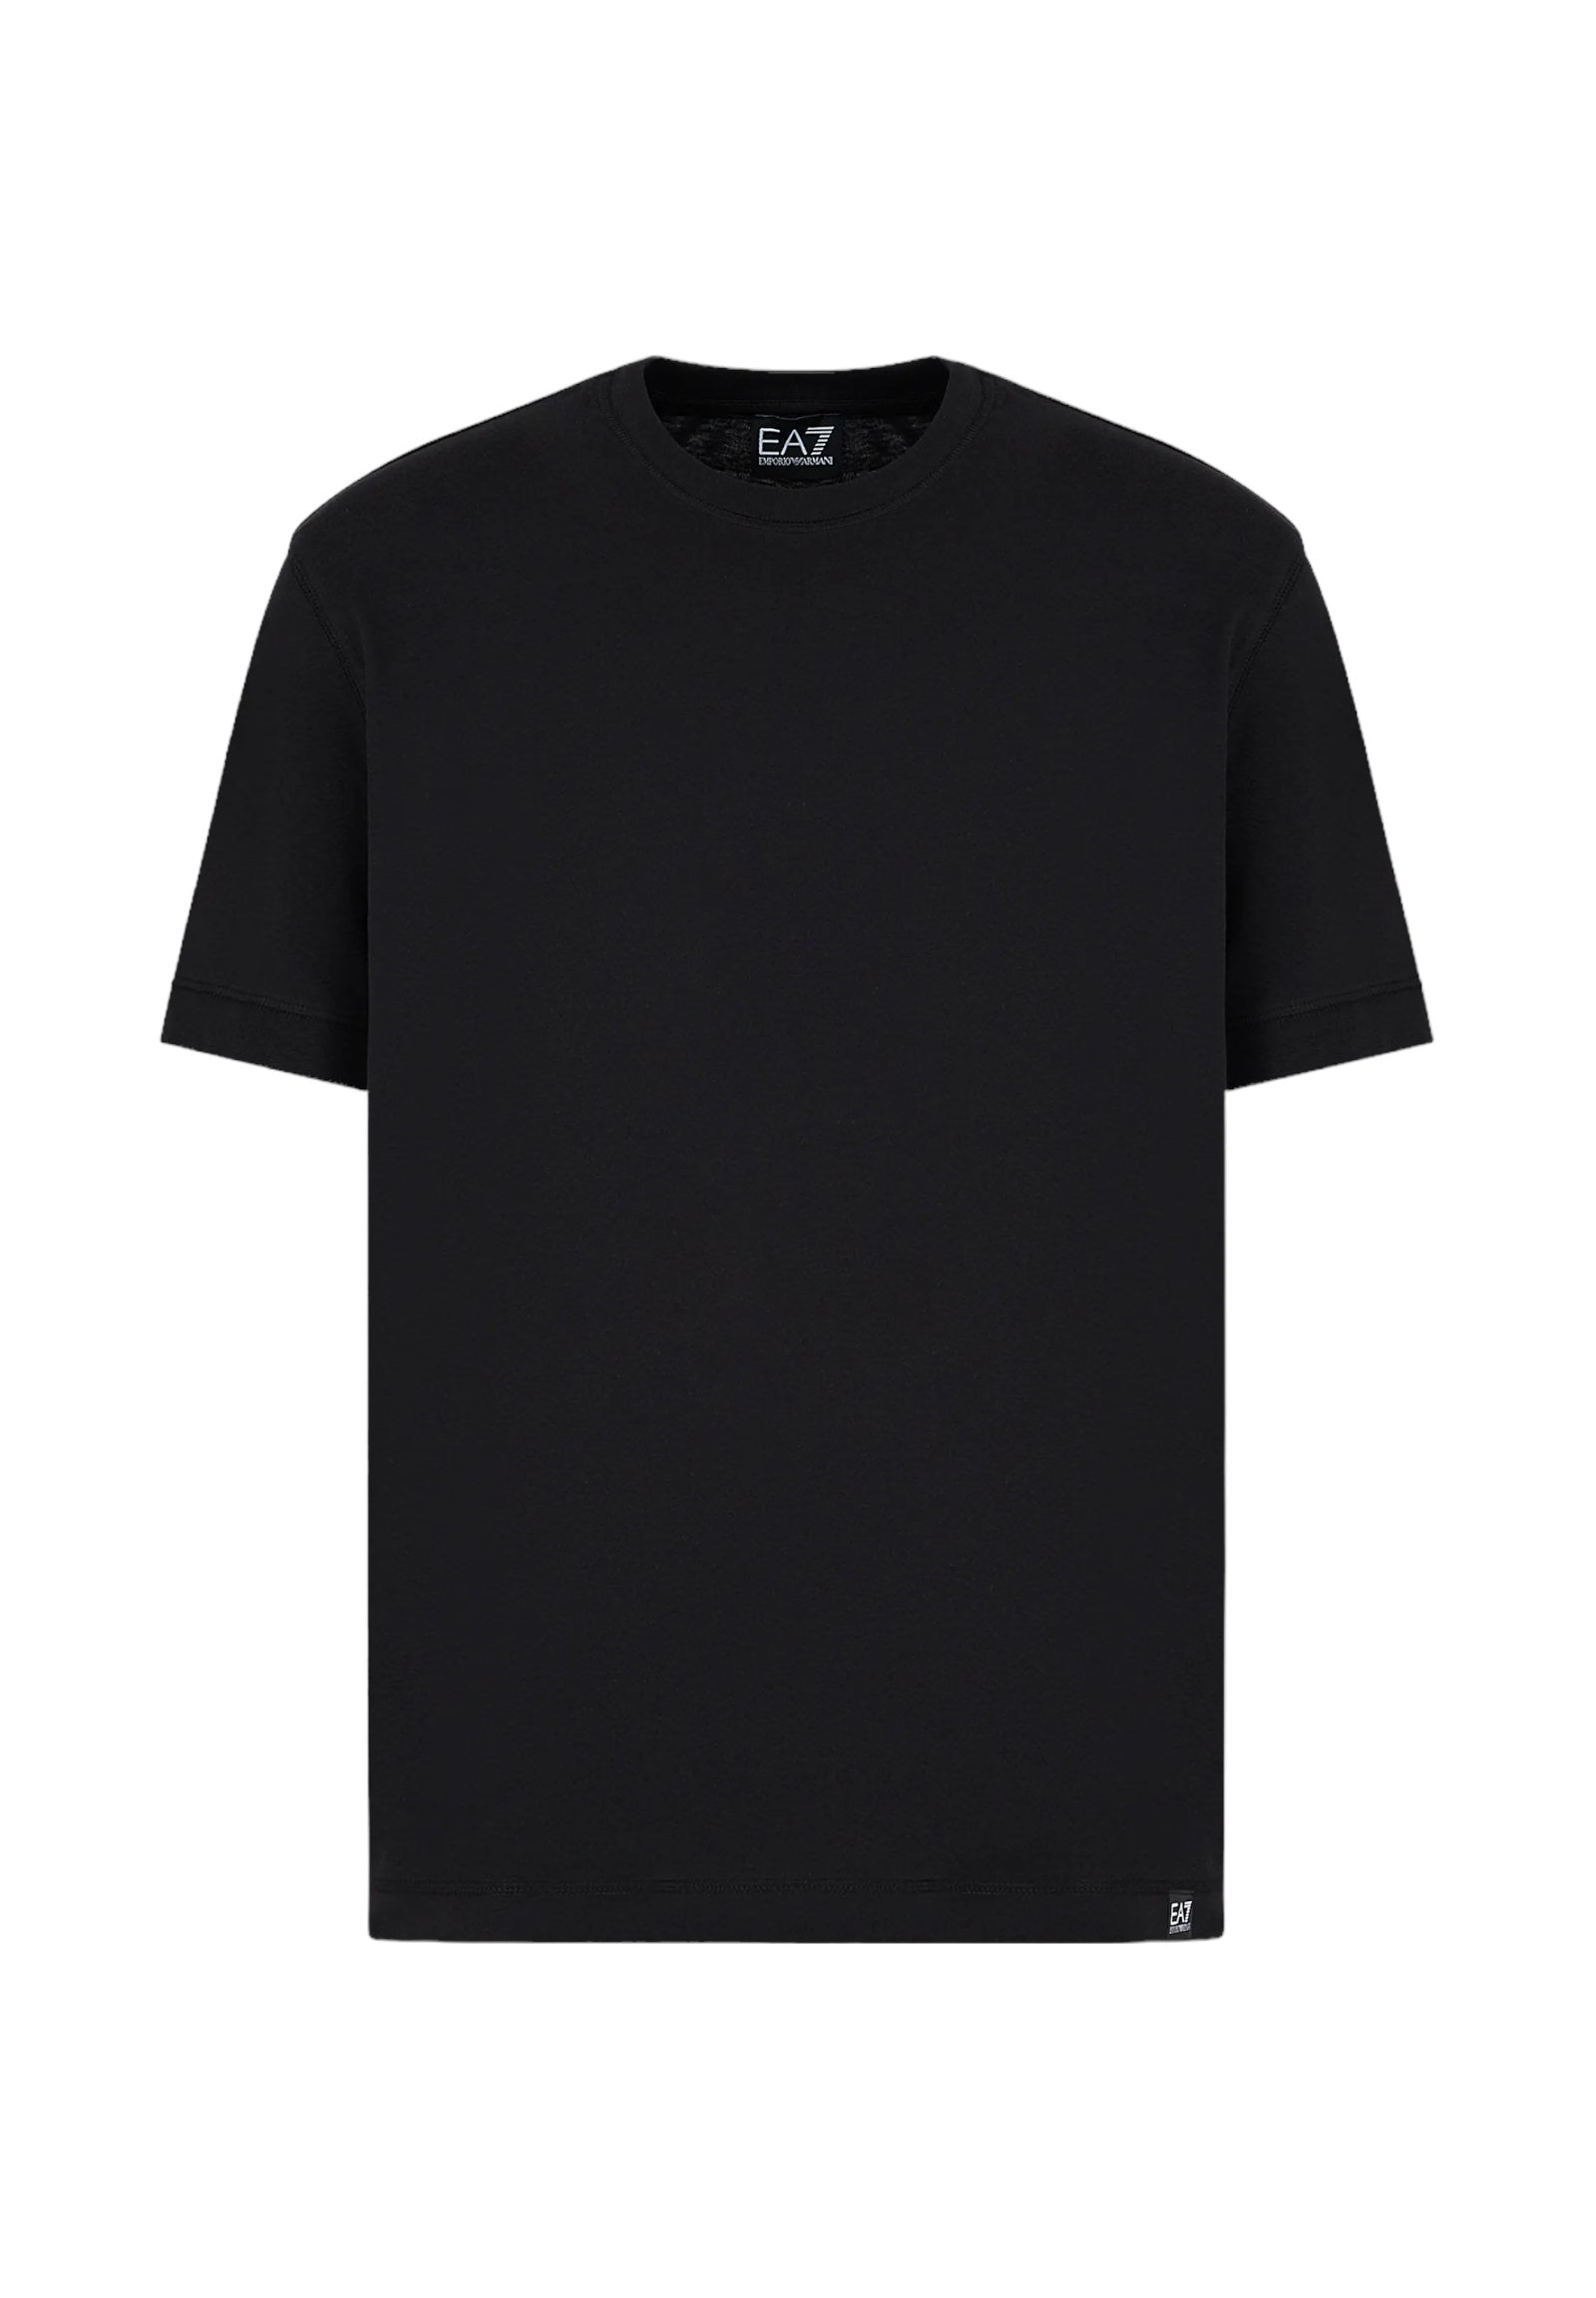 T-Shirt 3dut02 Black